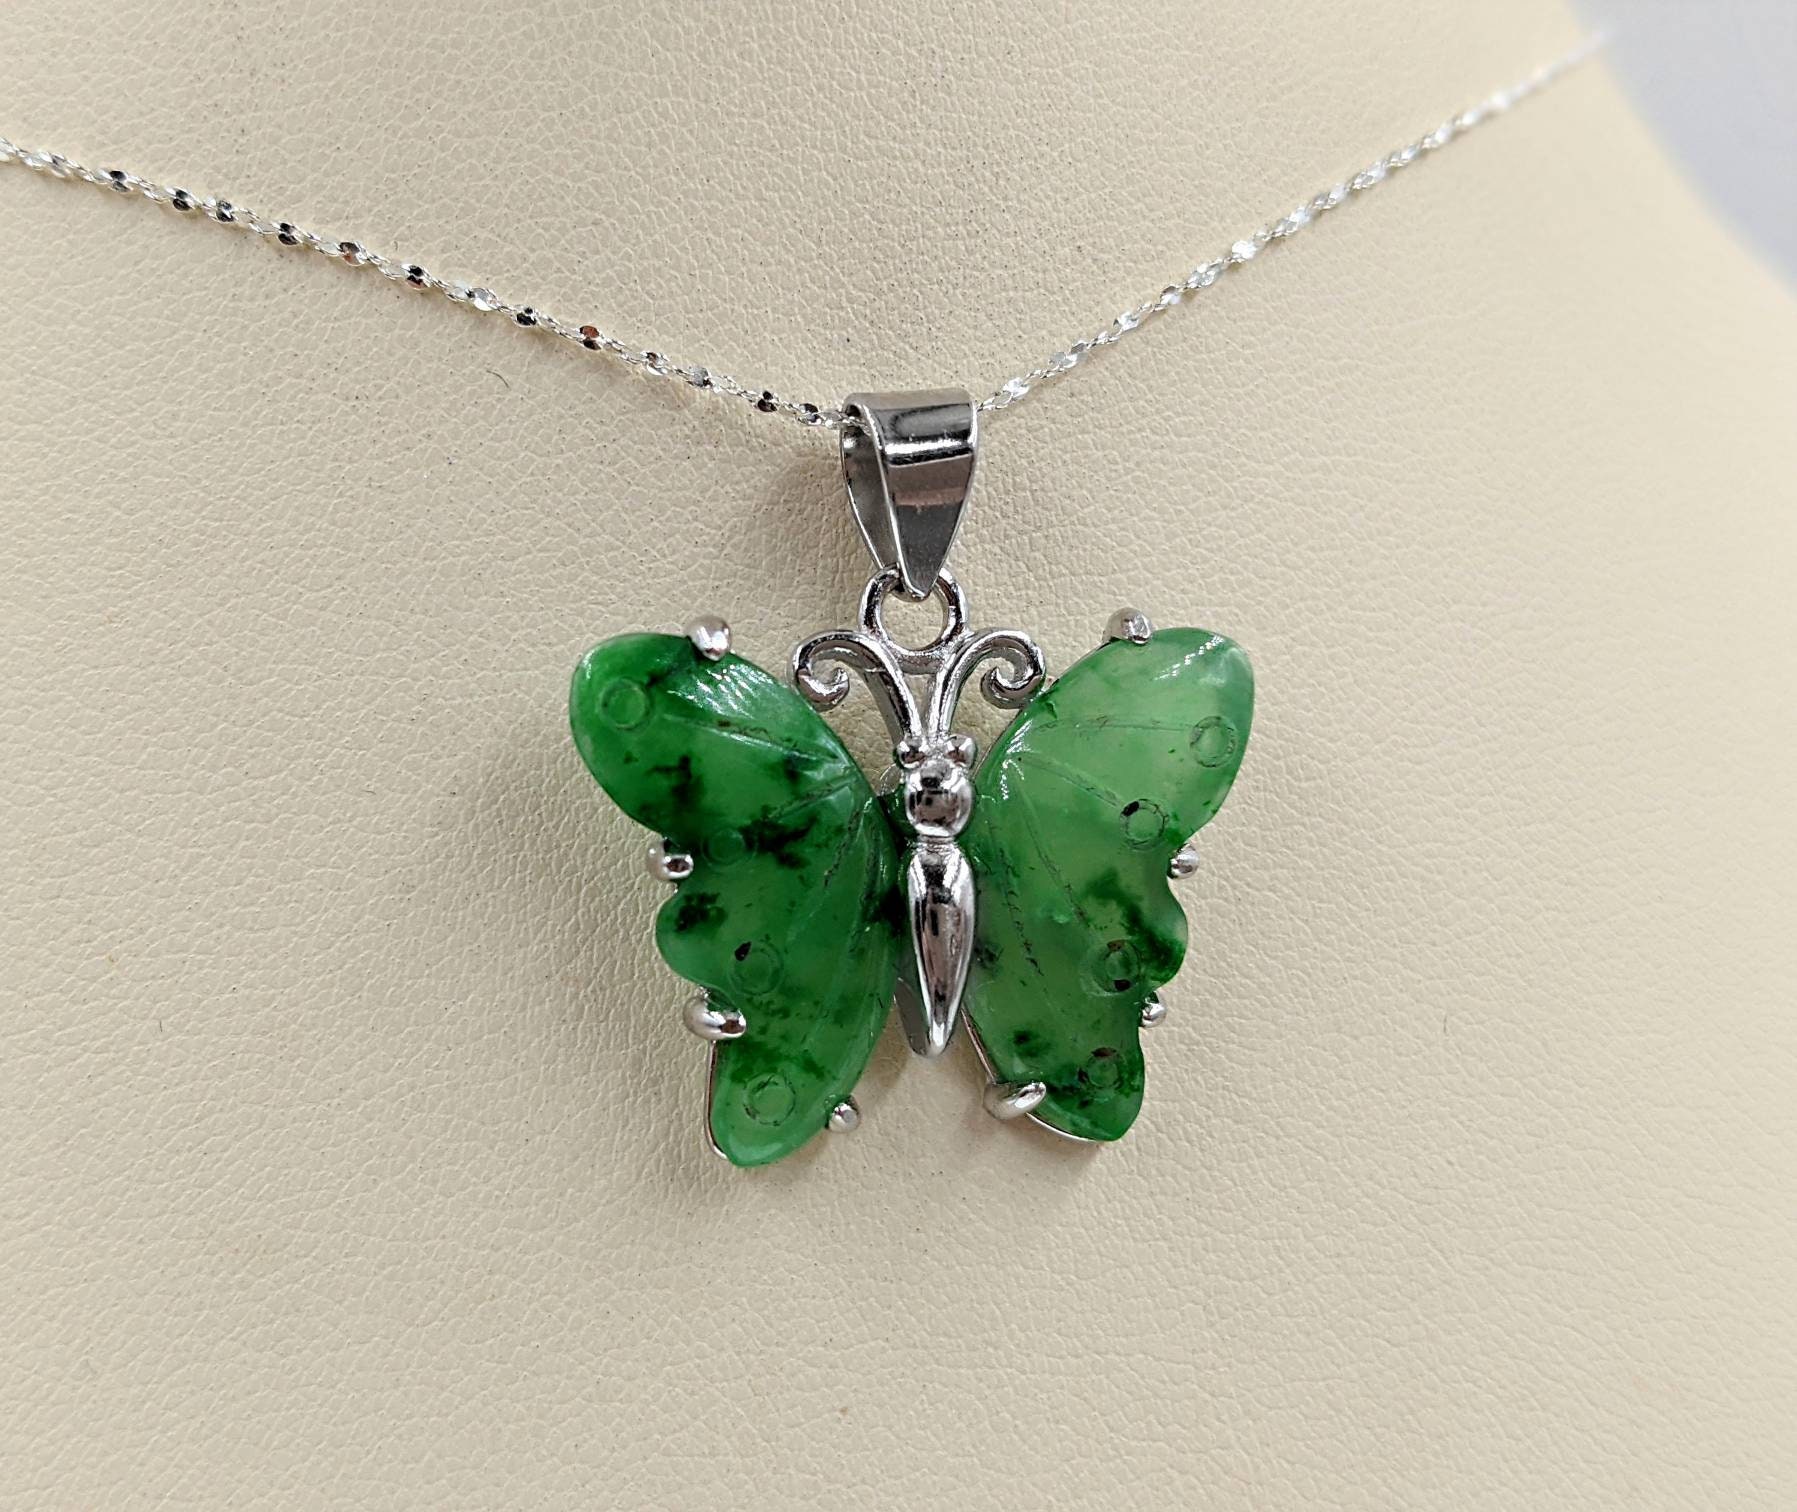 Jennifer Miller Multi-Gemstone Butterfly Necklace, 14K Plated - QVC.com